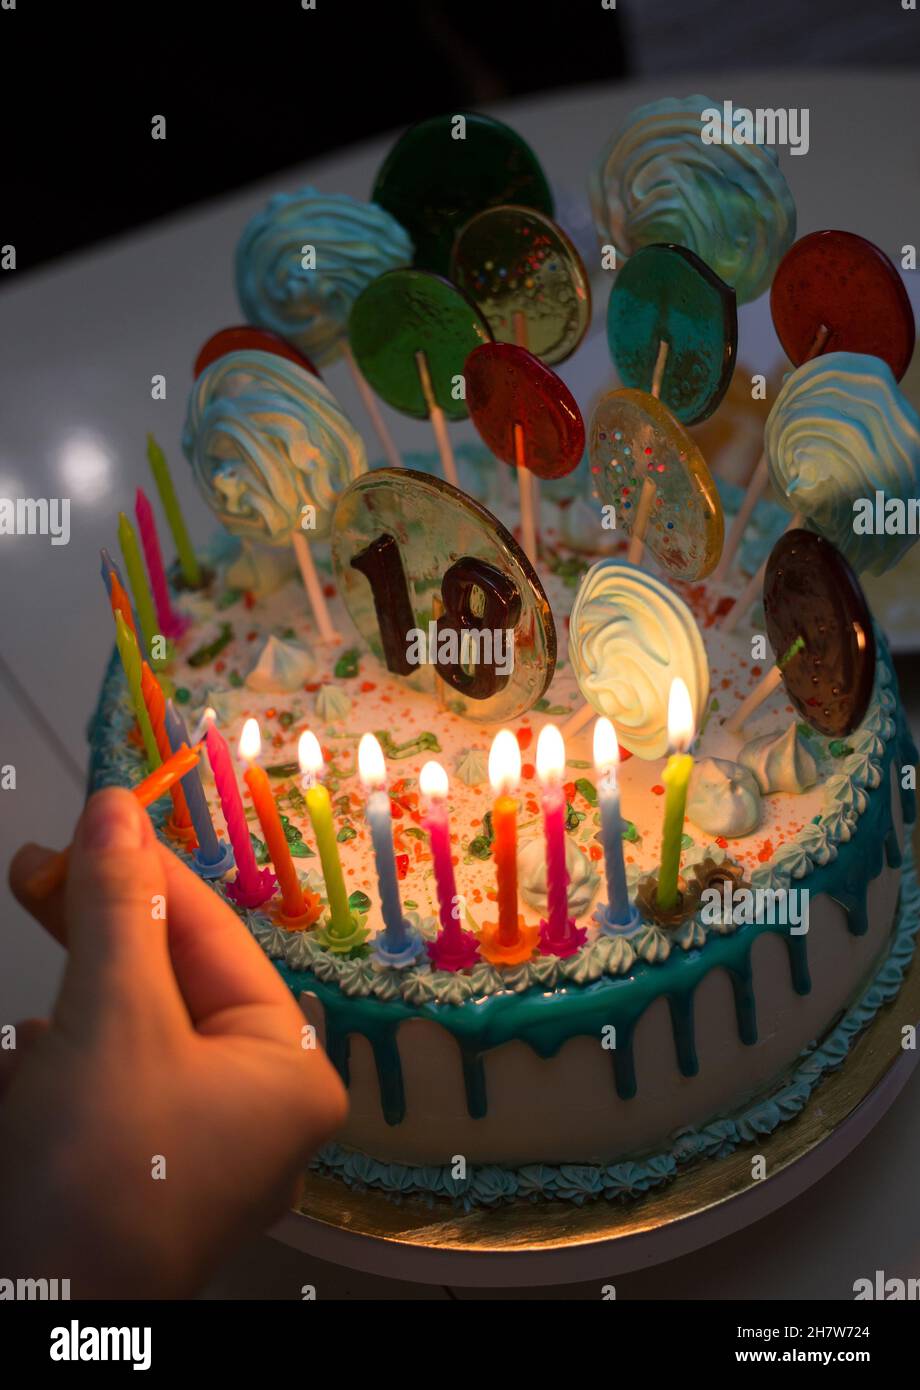 Vela de cumpleaños de 18 años, velas de número 18 años para decoración de  tarta, decoración de fiesta de niño o niña, suministros